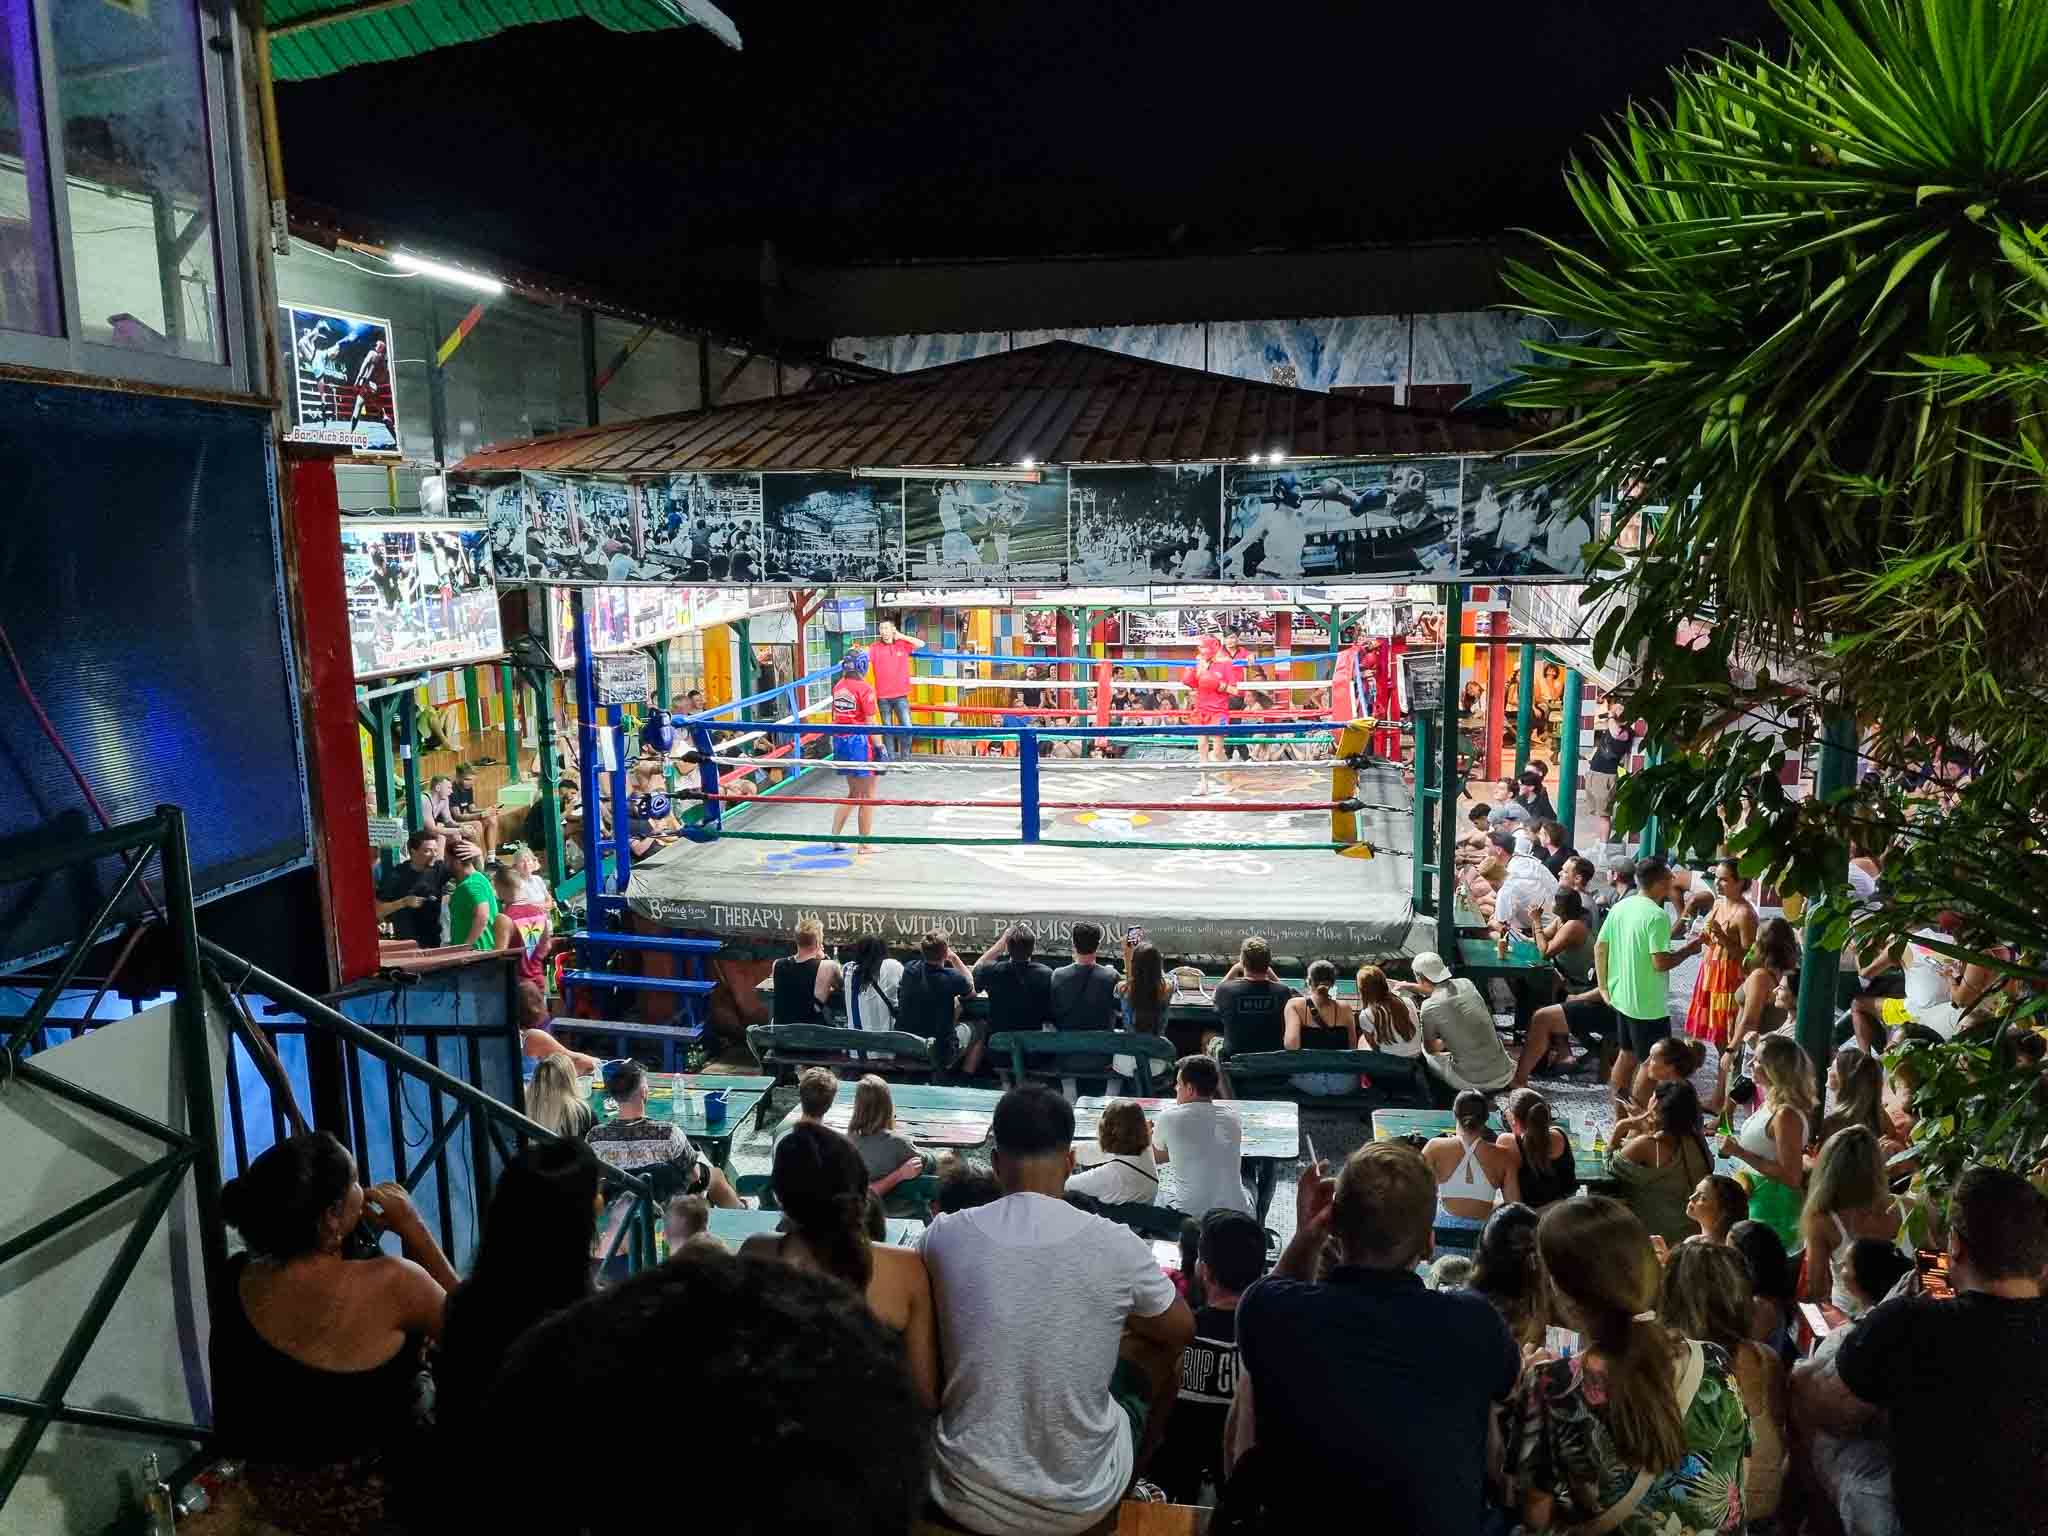 Bar de luta de muay thai nas ilhas Pipi na Thai.